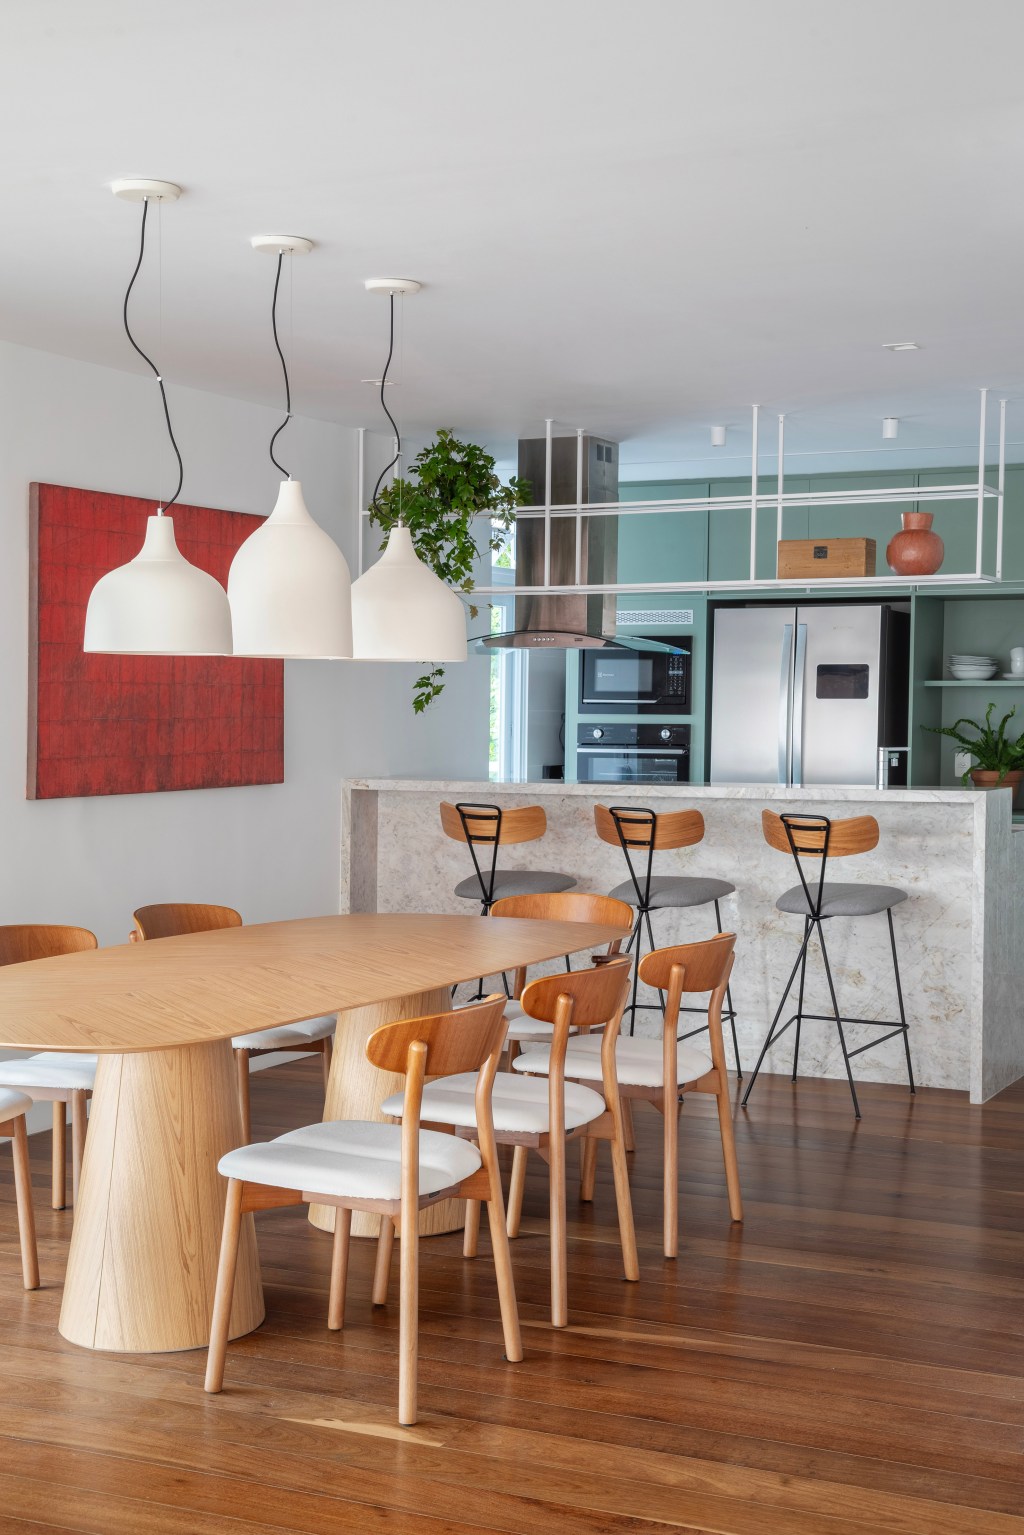 Paredes brancas, piso de madeira e armários verdes marcam apê de 280 m². Projeto Beta Arquitetura. Na foto, cozinha americana com armários verdes.